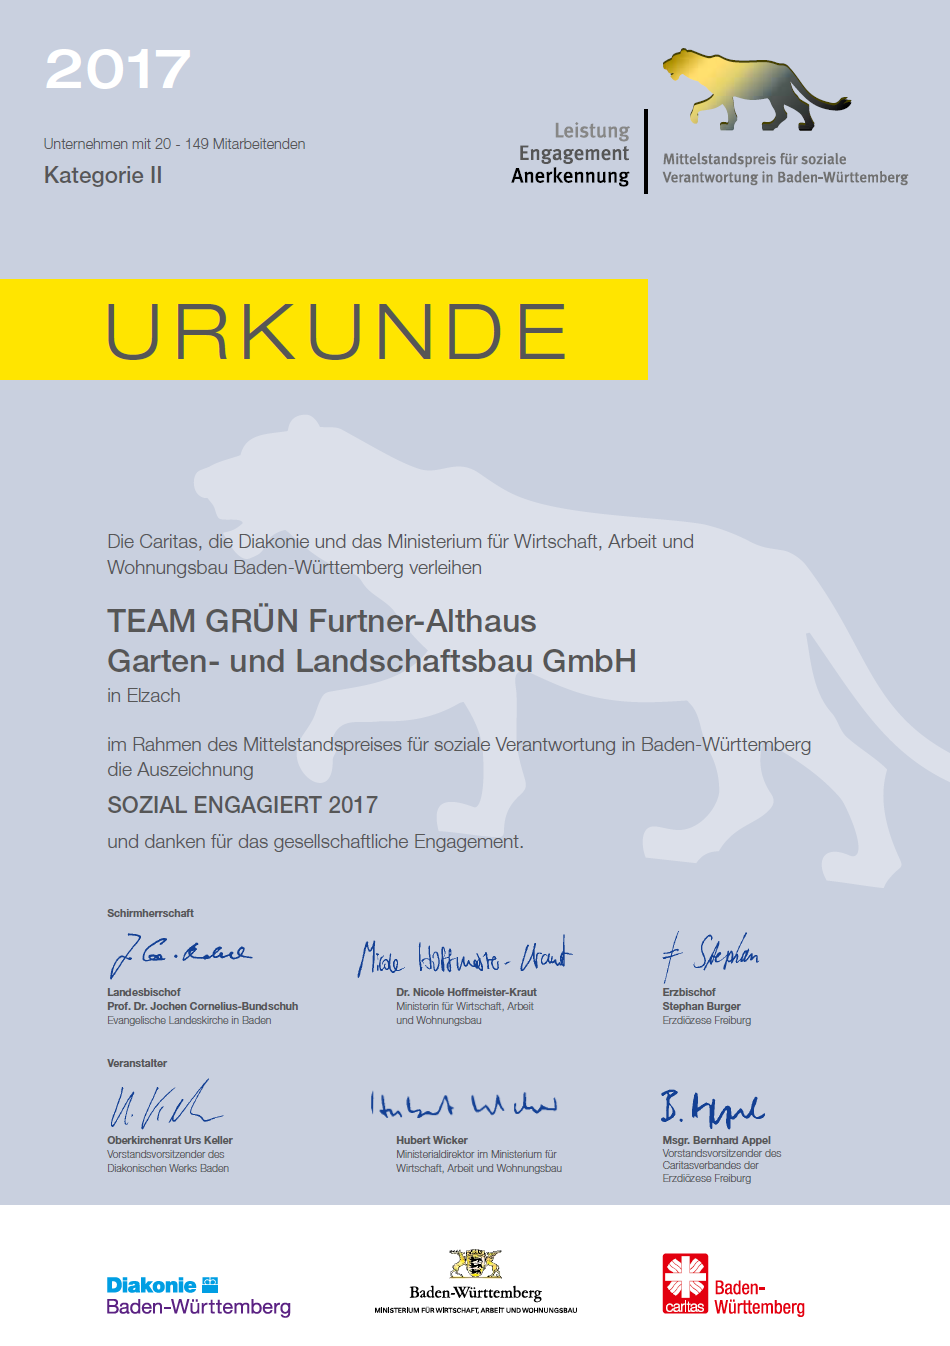 TEAM GRÜN Elzach- sozial engagiert 2017